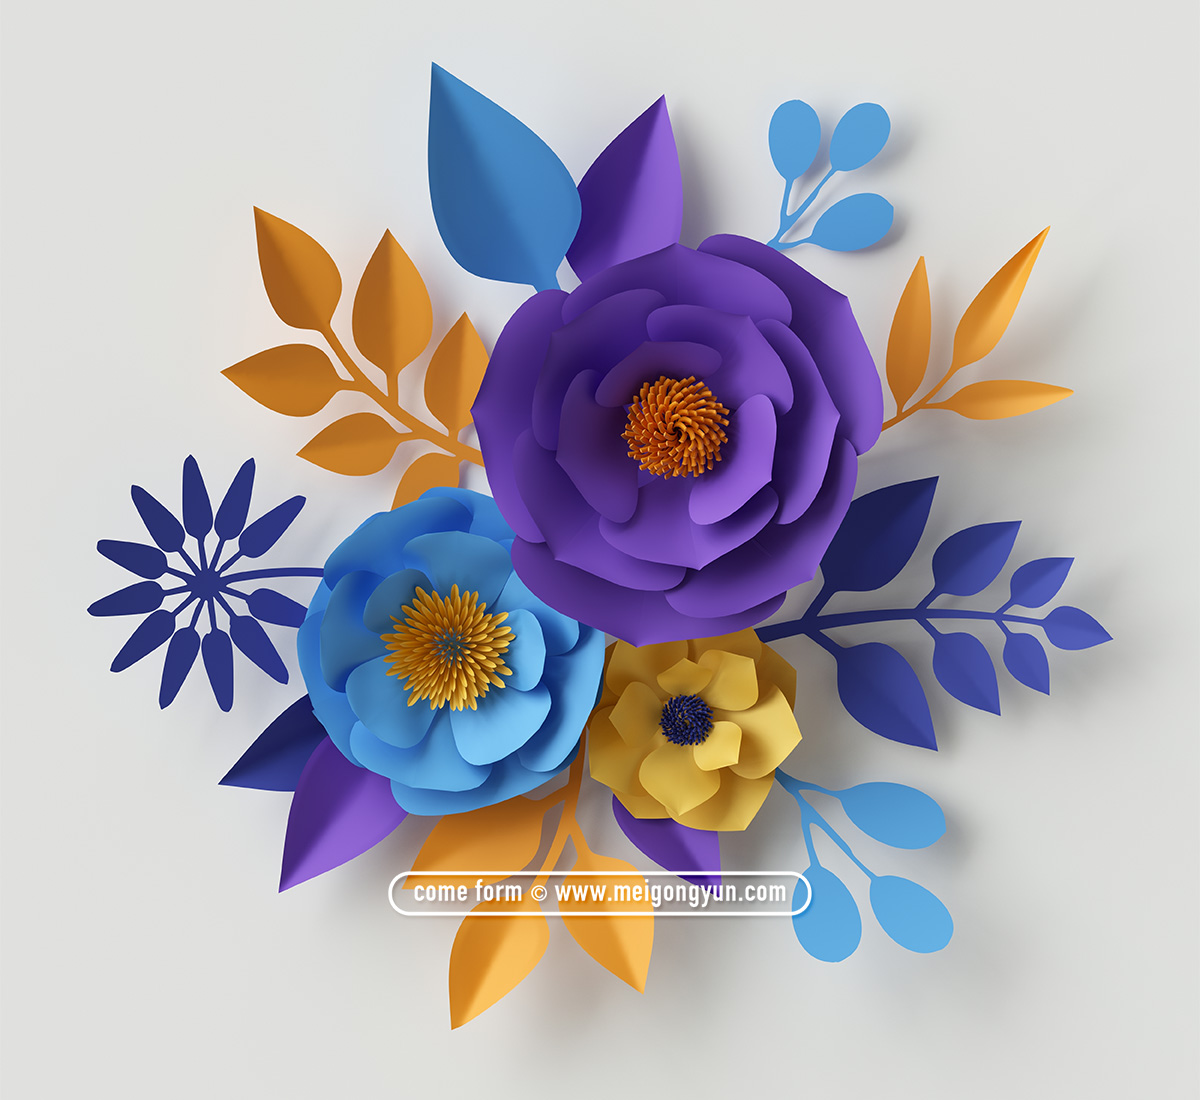 超清彩色剪纸花卉素材 Paper-Cut Flowers#2